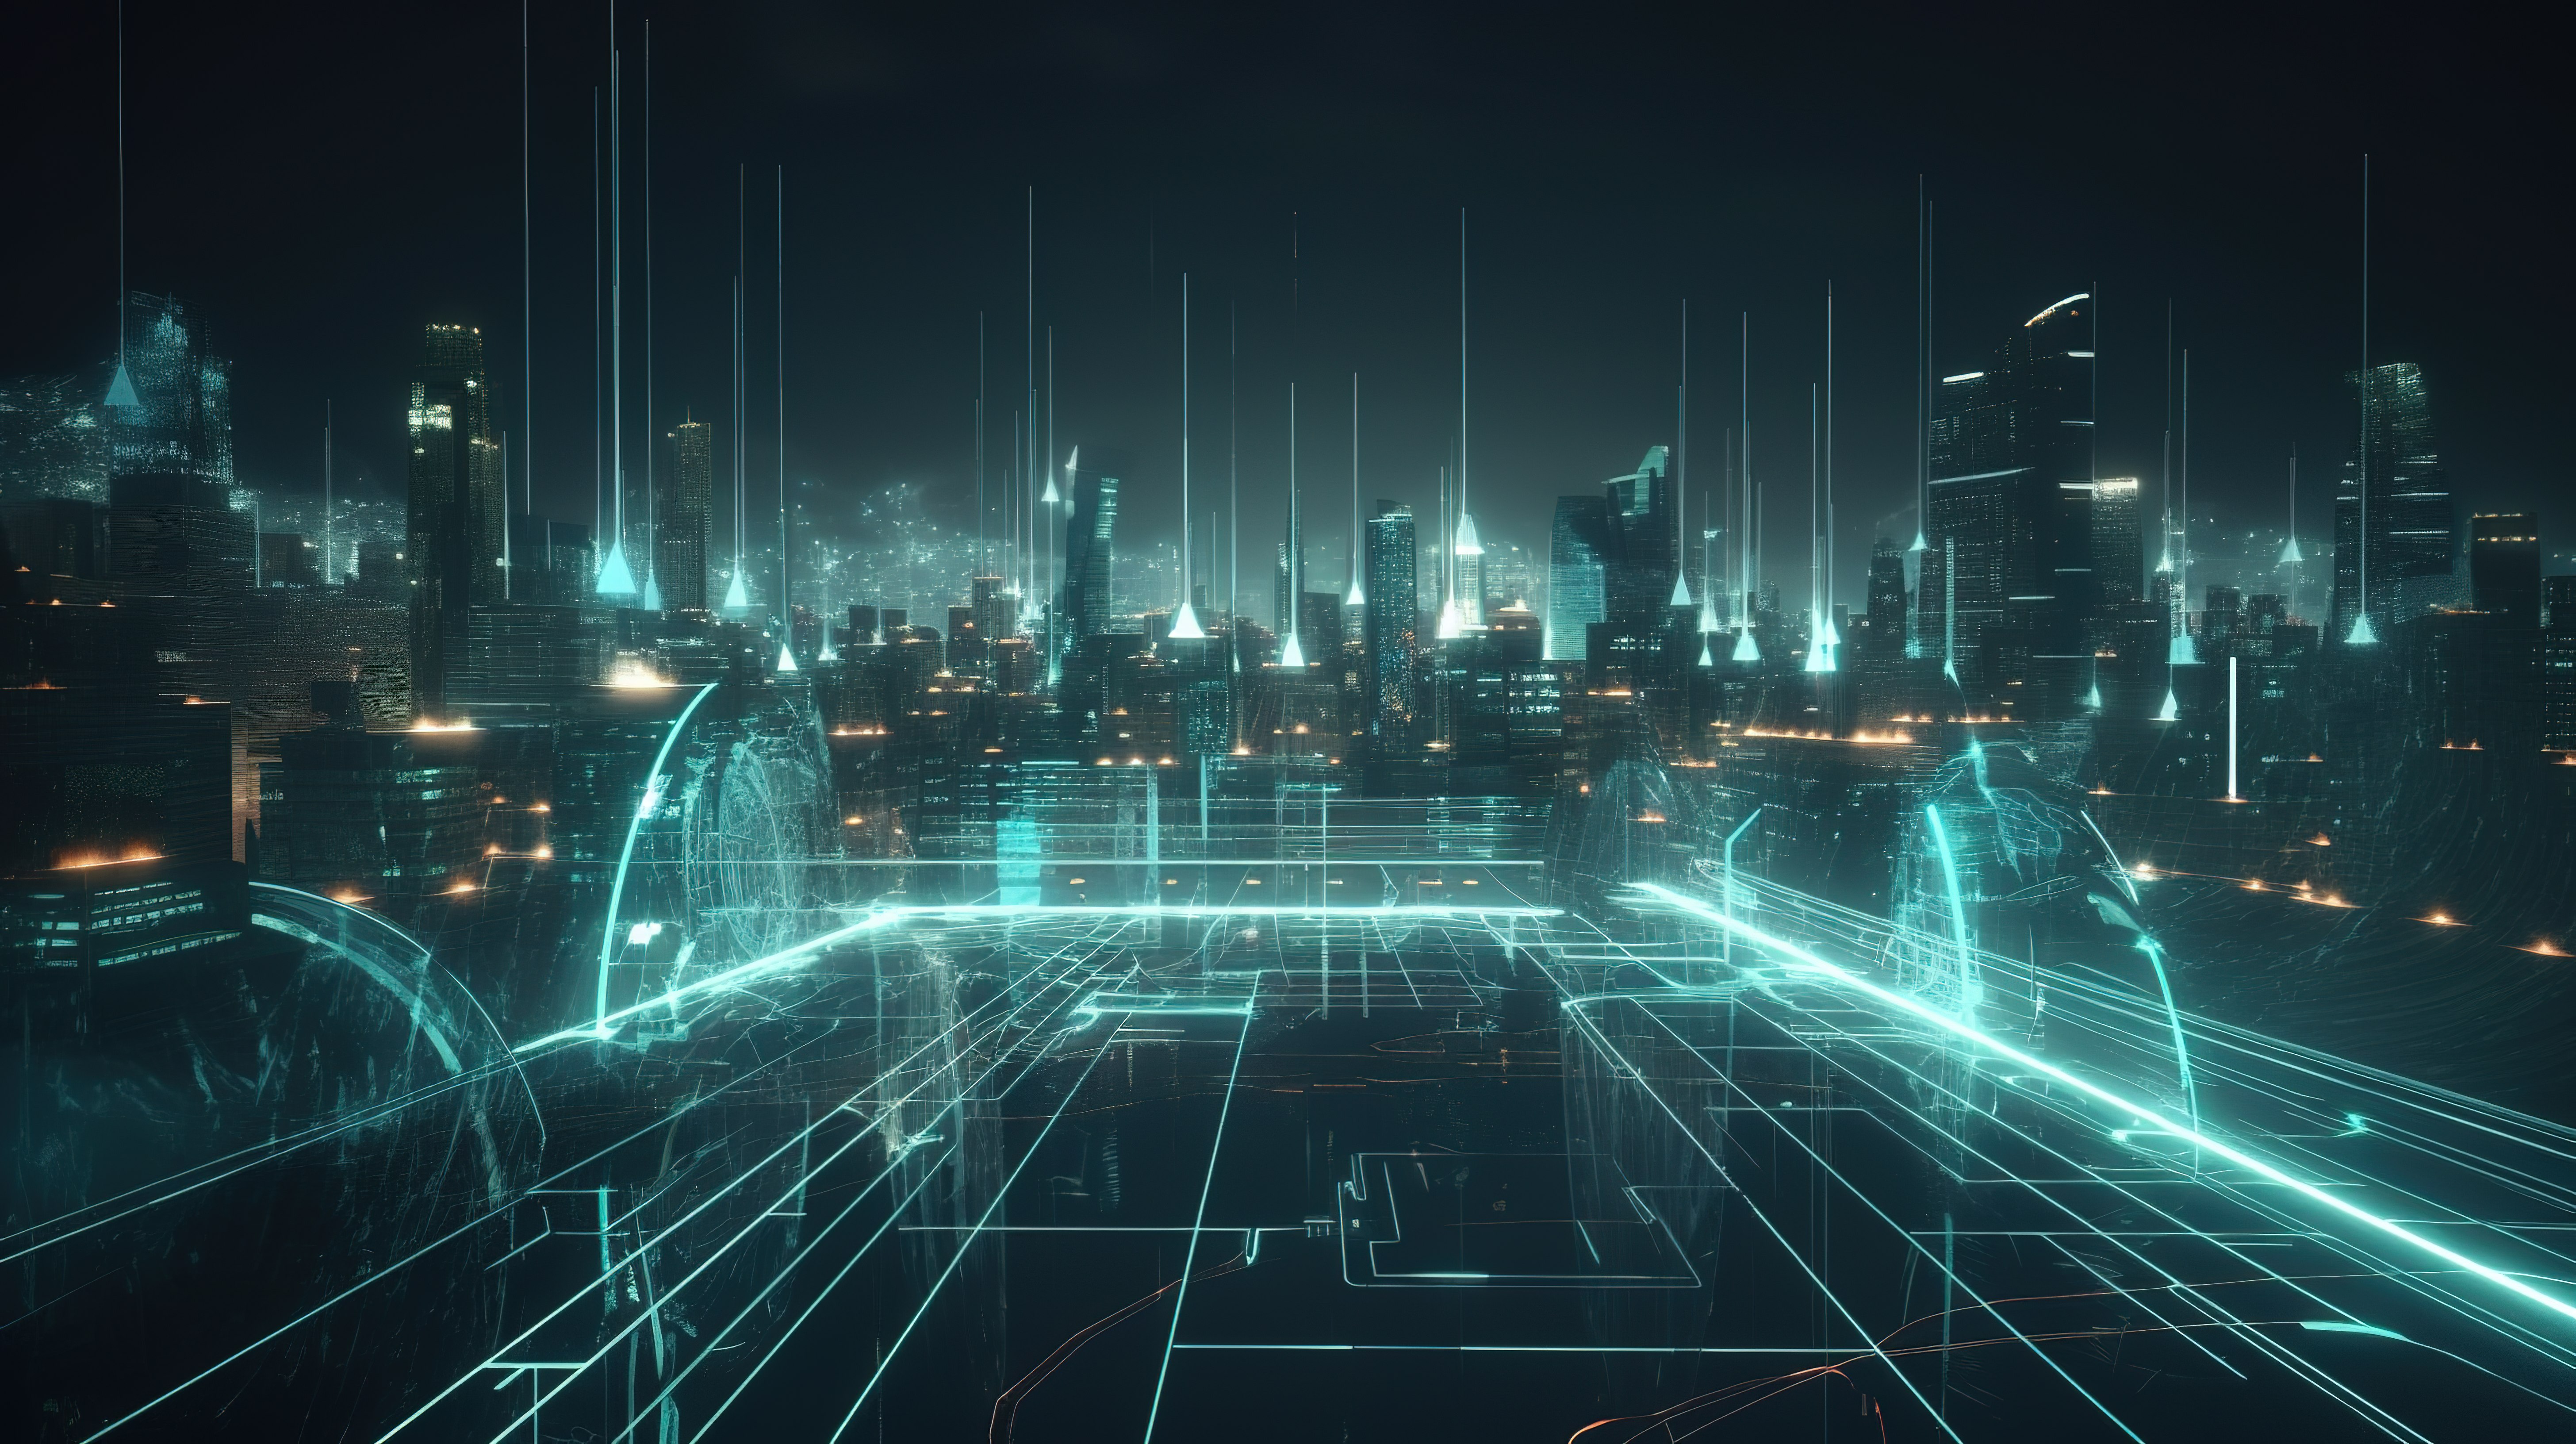 未来派全息图城市 3d 运动图形描绘数字城市设计 ai 和智能城市概念与赛博朋克触摸图片